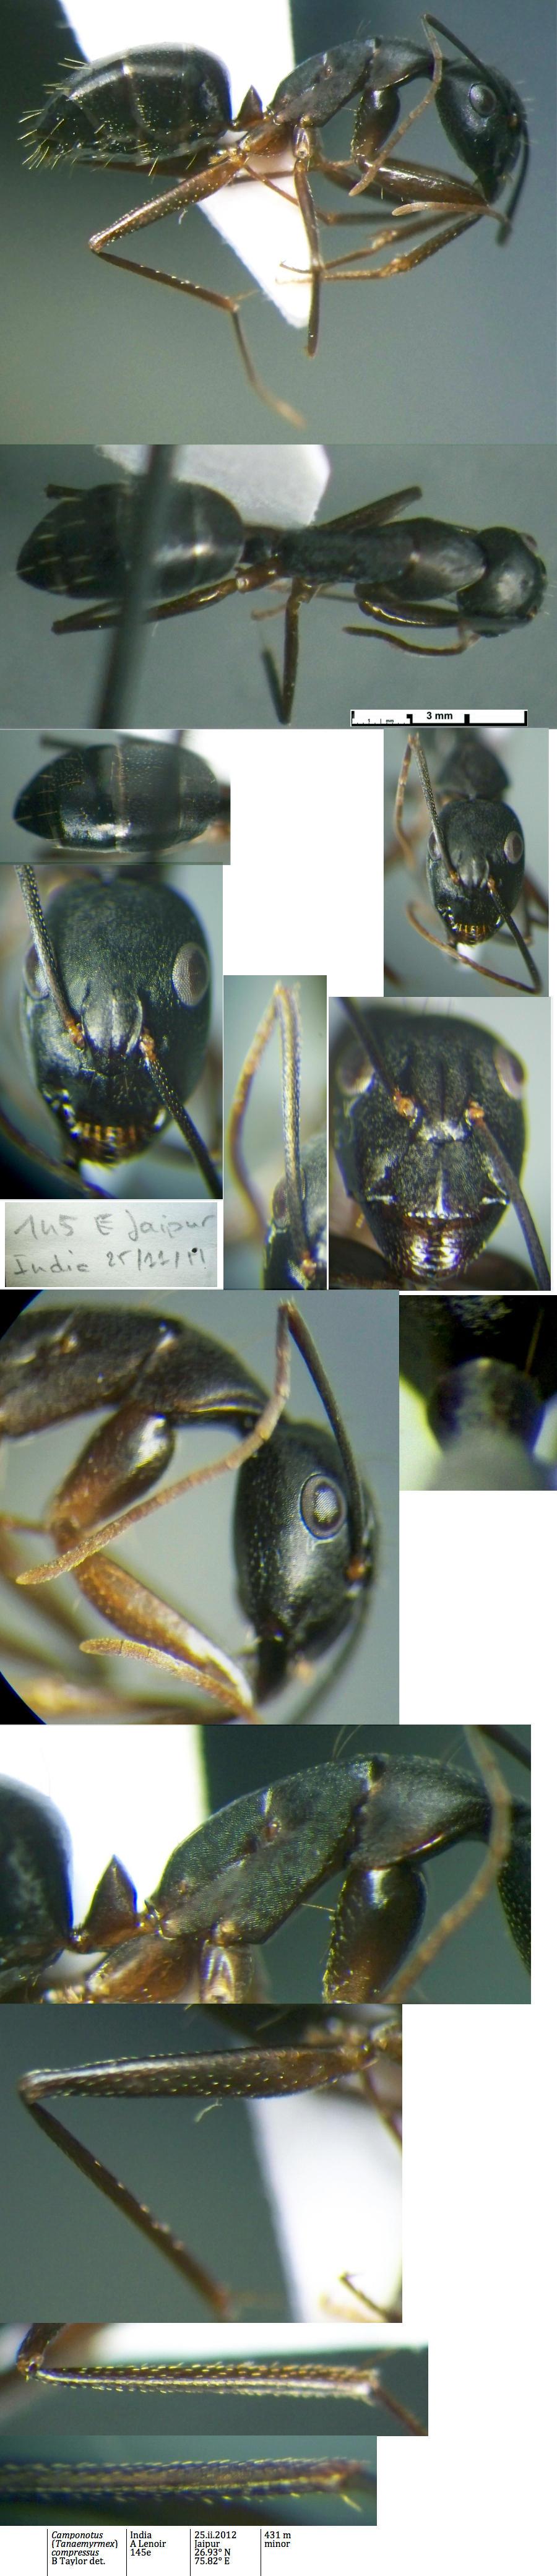 {Camponotus compressus minor India}